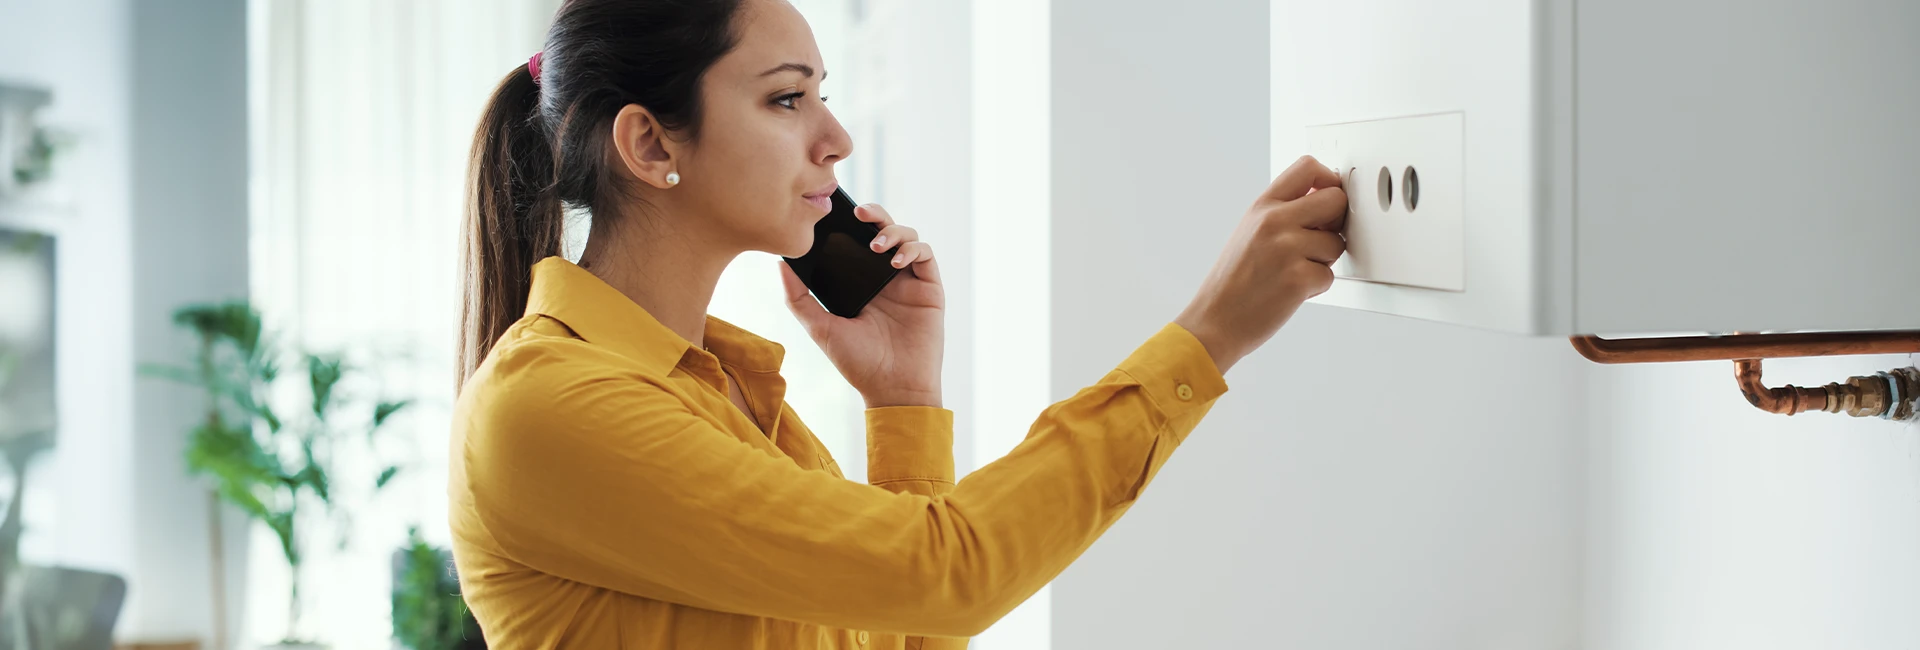 Une jeune femme au téléphone suit les consignes de son chauffagiste face à sa chaudière en panne